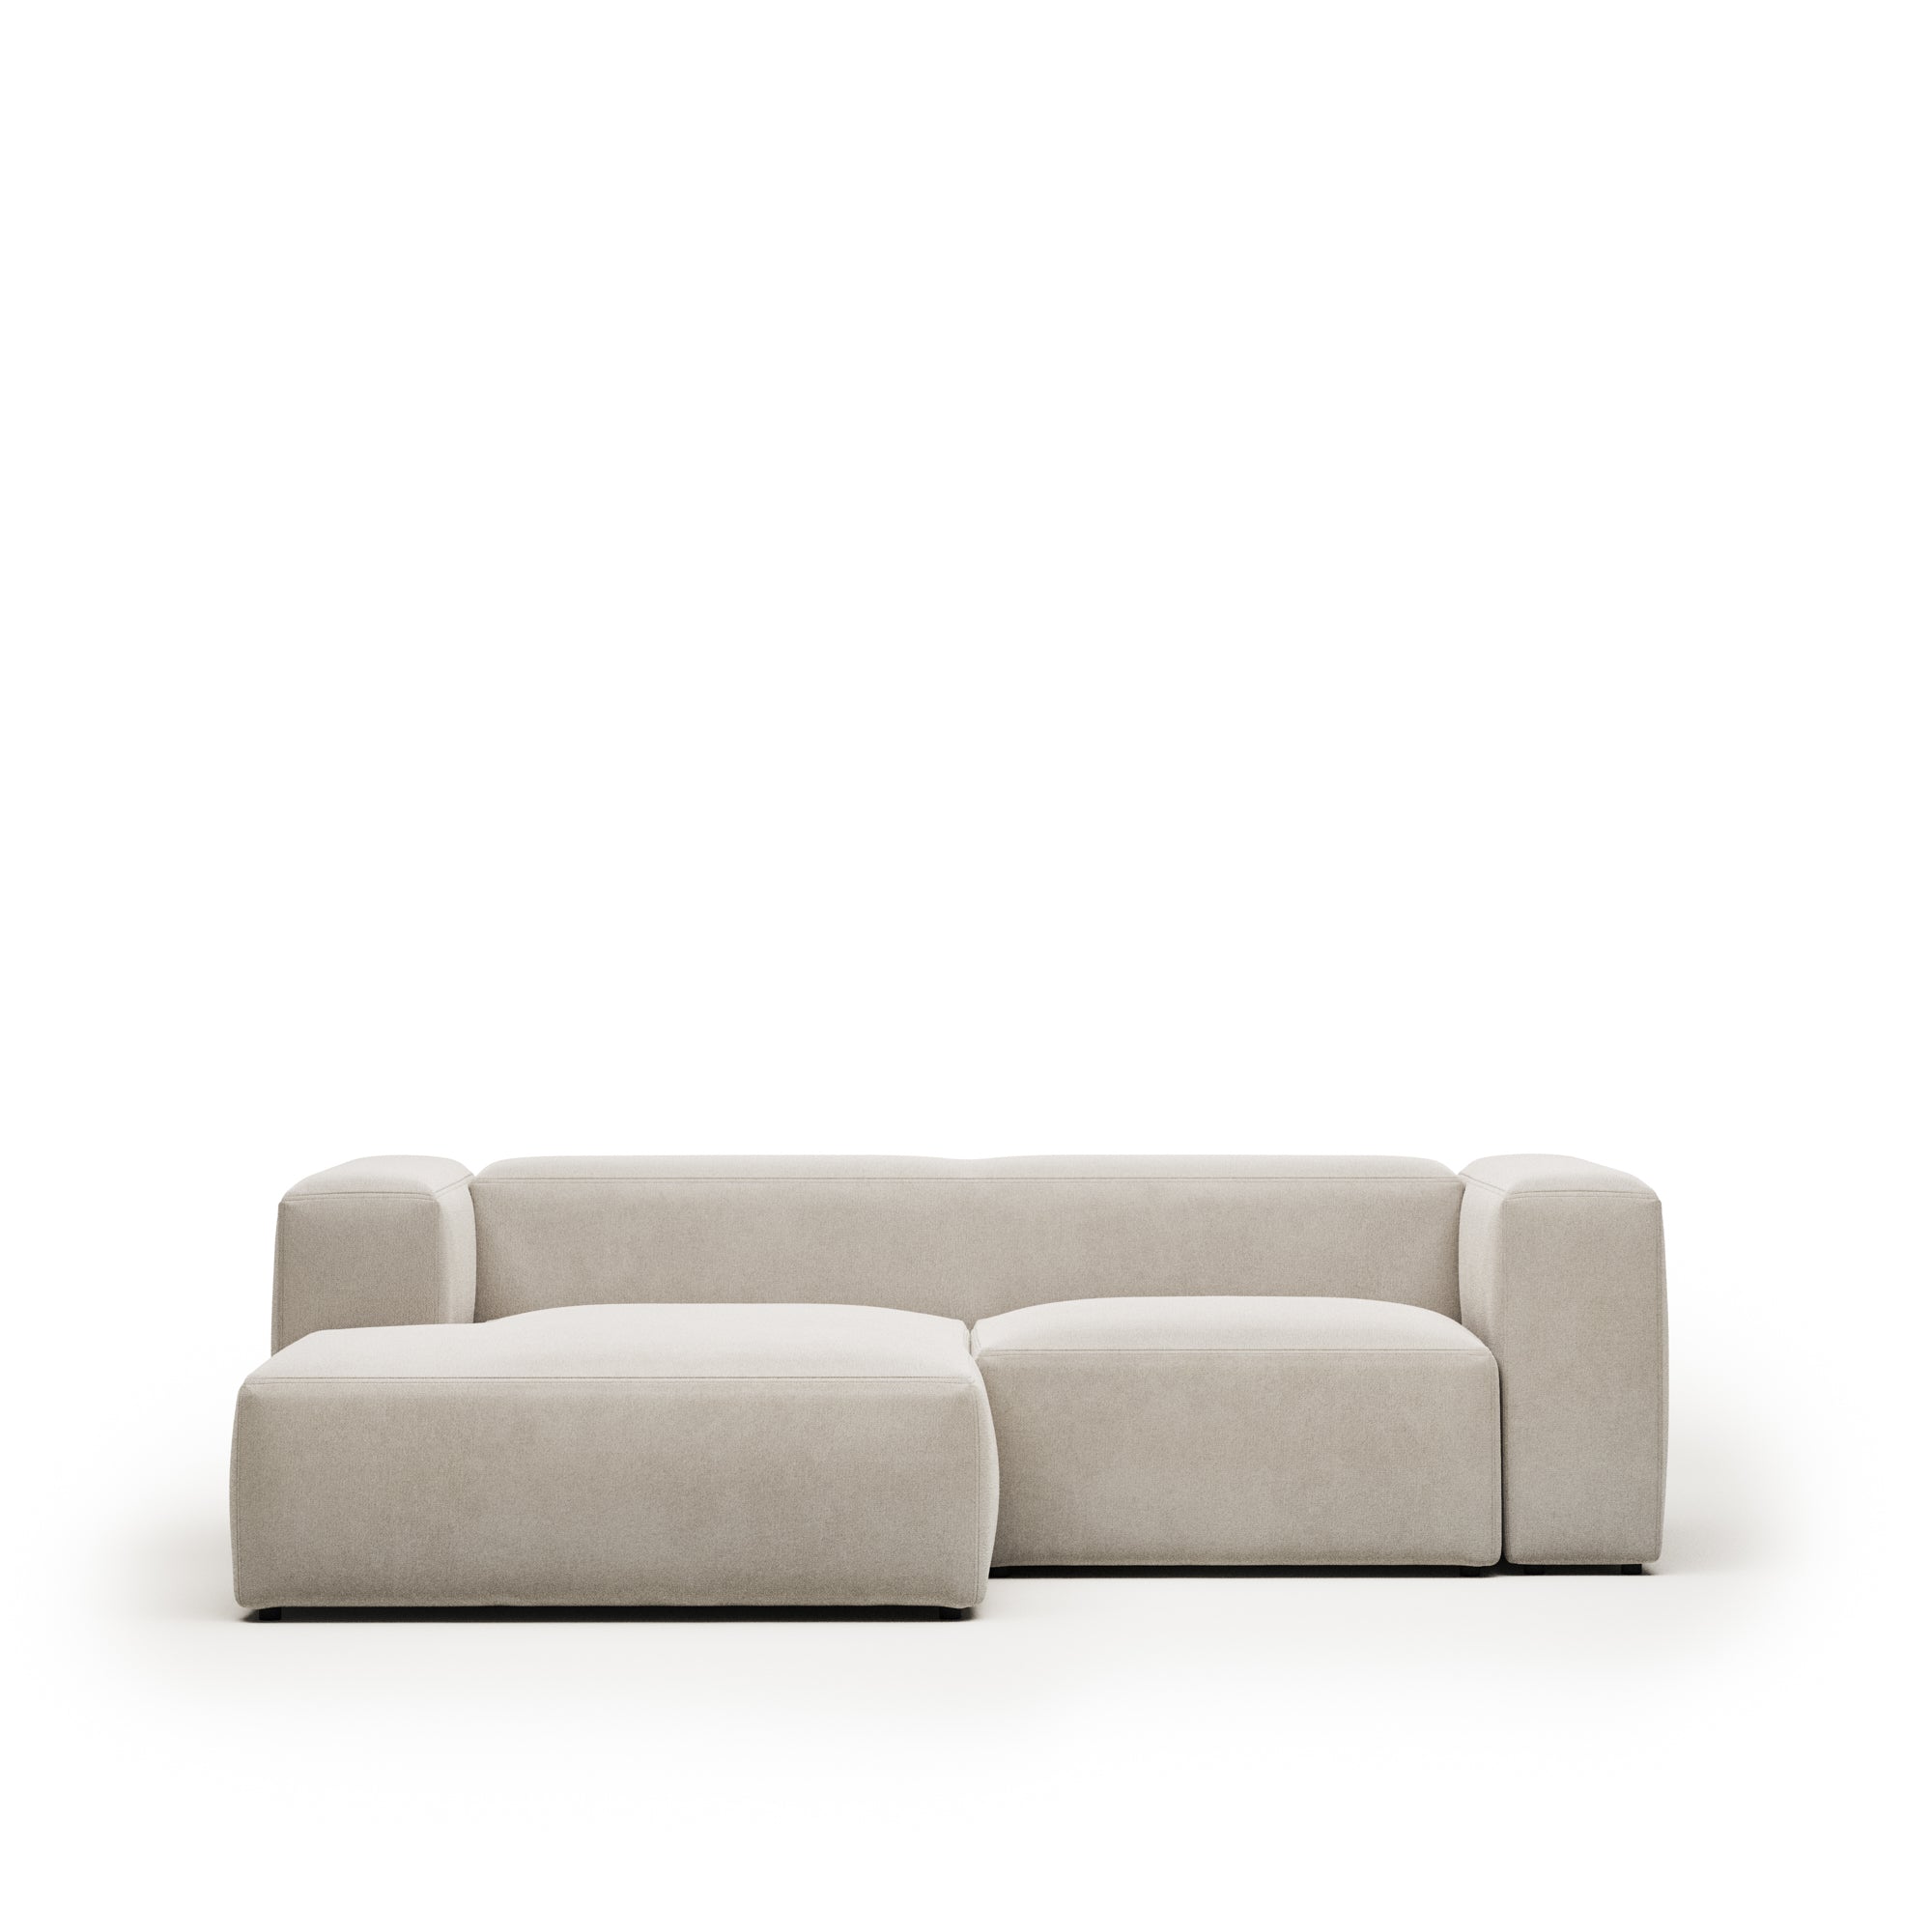 Blok 2 személyes kanapé bézs színben, 240 cm, bal oldali fekvőfotellel